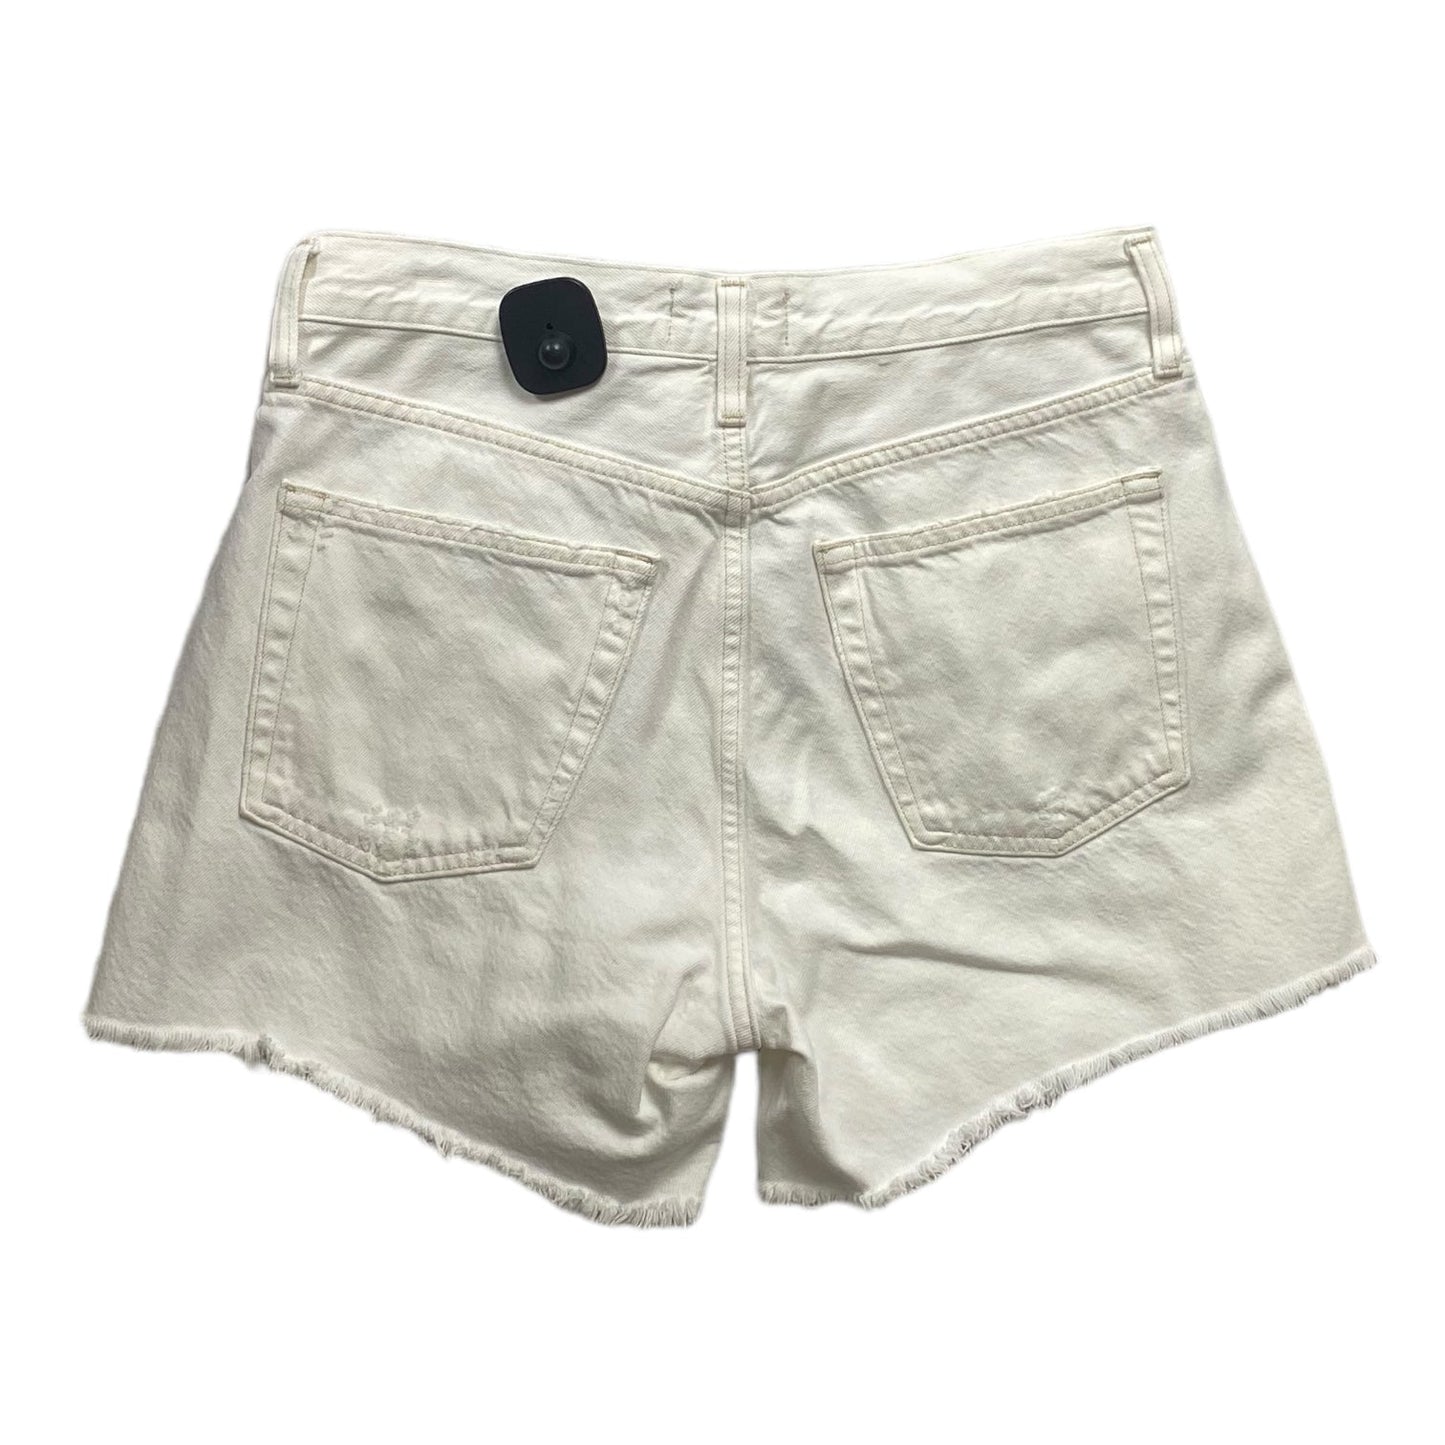 White Shorts Agolde, Size 2